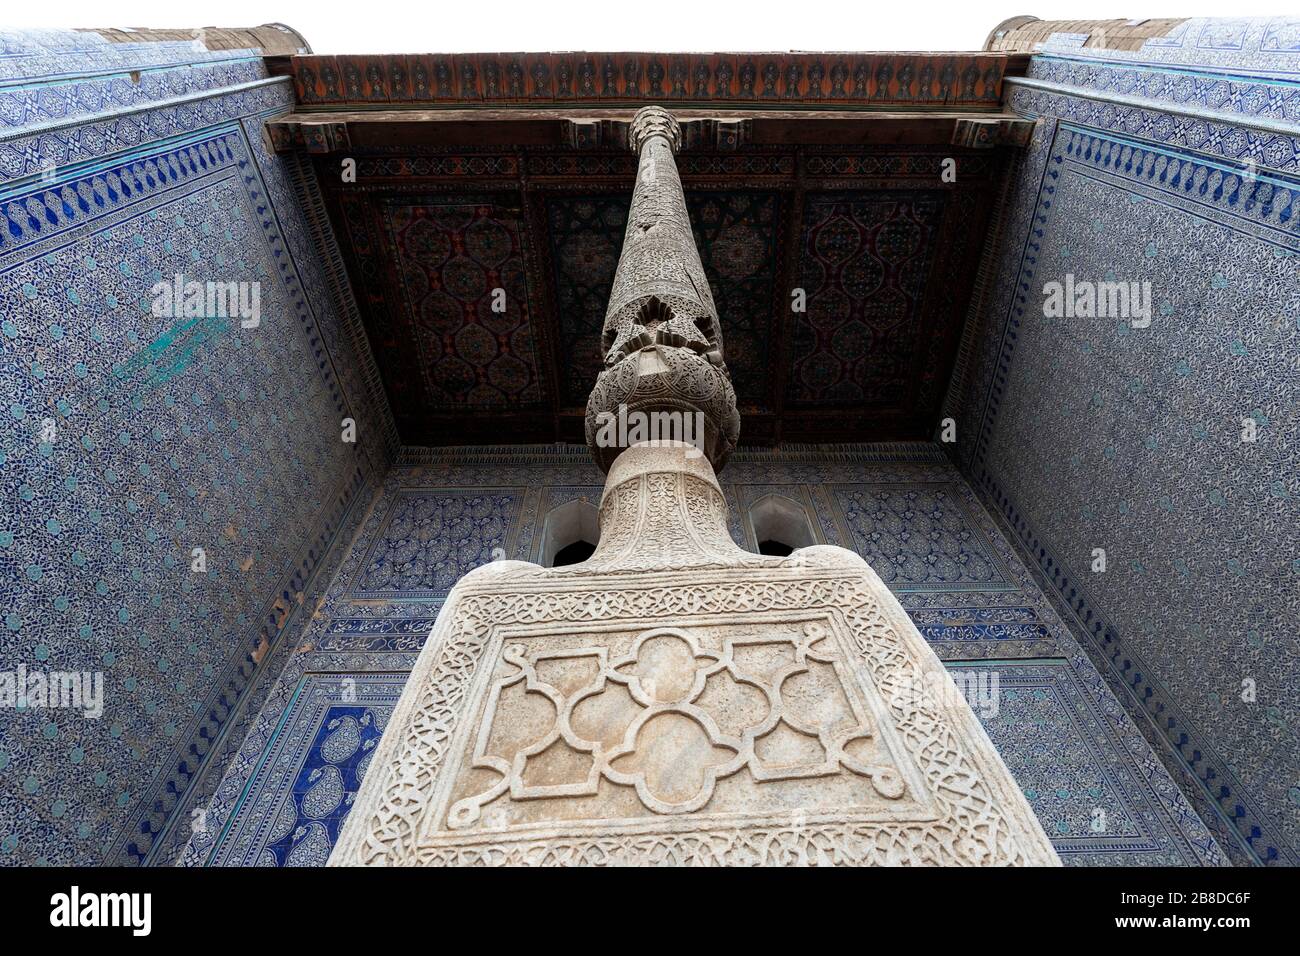 Gros plan sur le pilier en bois de la cour intérieure avec pilier sculpté et carreaux peints, le Palais de Tosh-Khovli ou Khan, Khiva, Ouzbékistan Banque D'Images